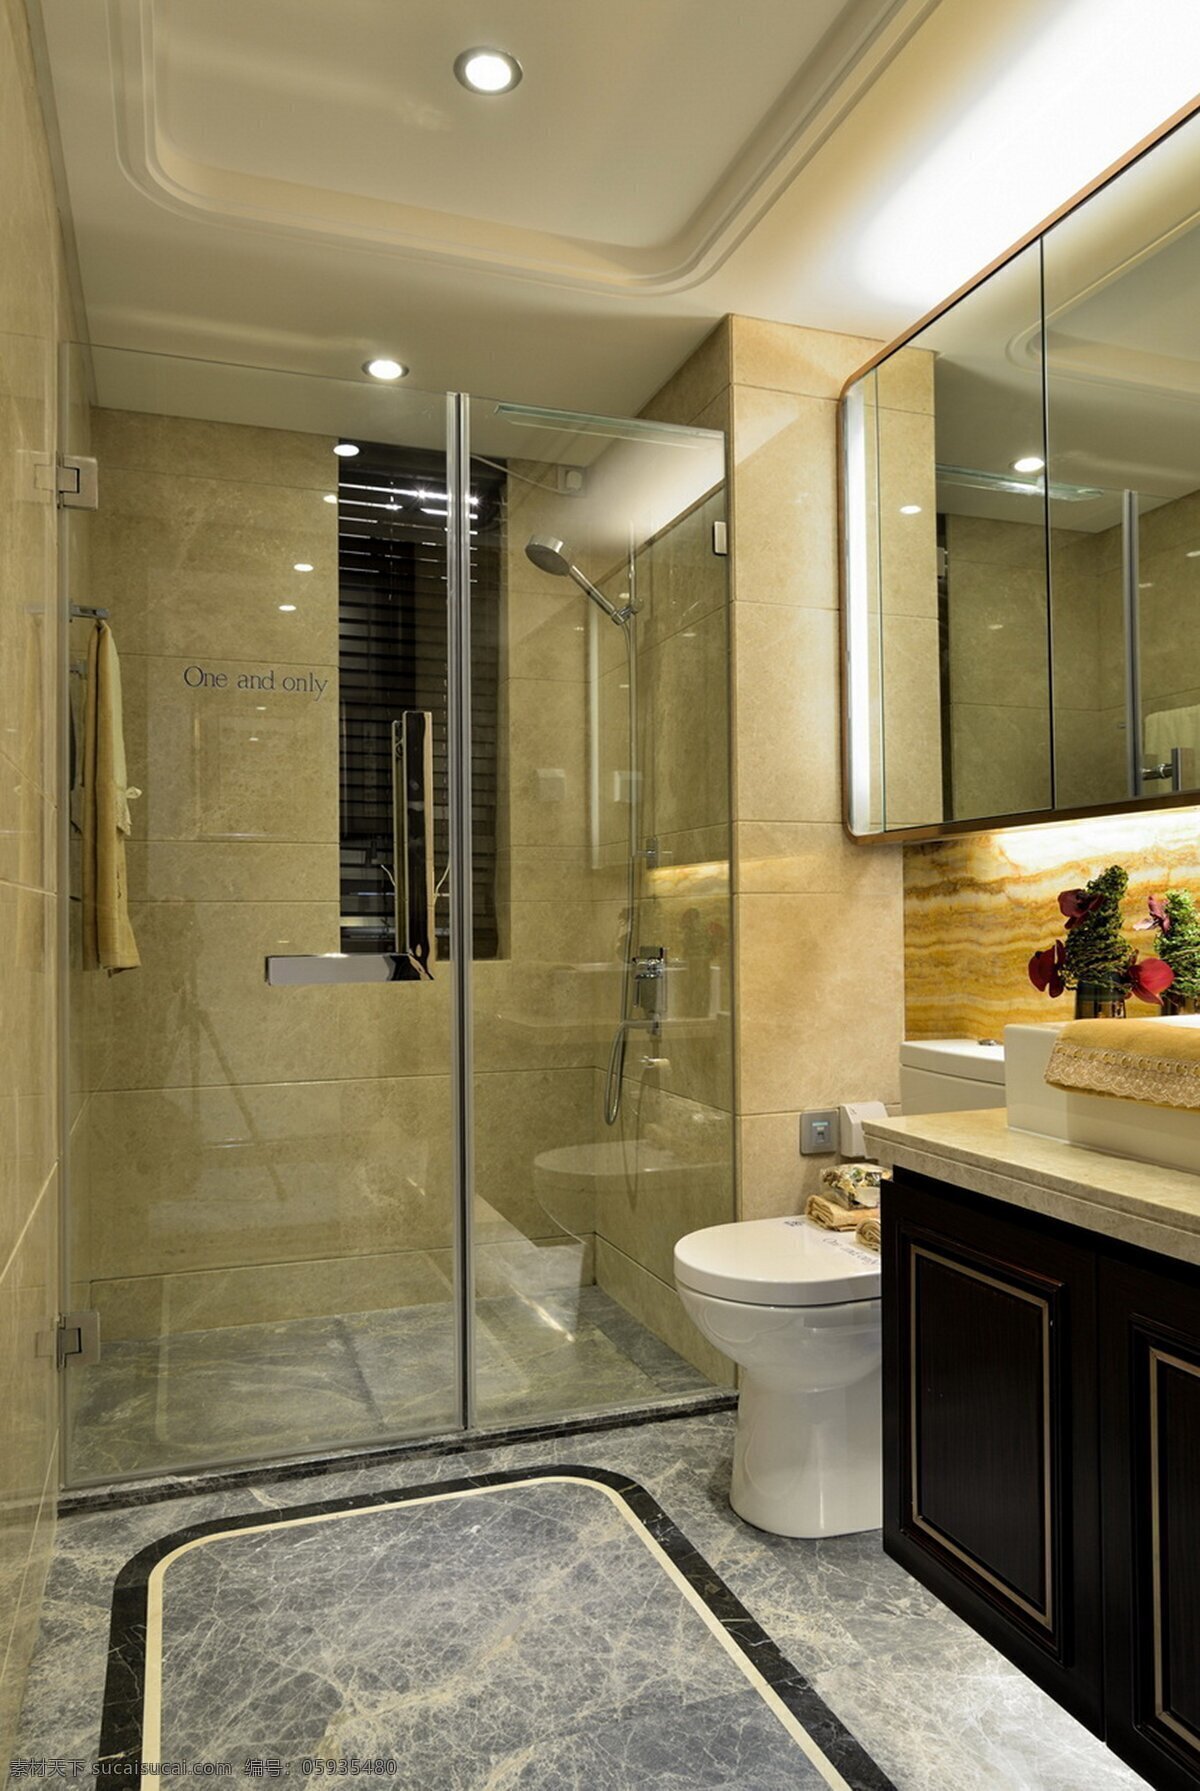 欧式 卫生间 浴室 马桶 设计图 家居 家居生活 室内设计 装修 室内 家具 装修设计 环境设计 效果图